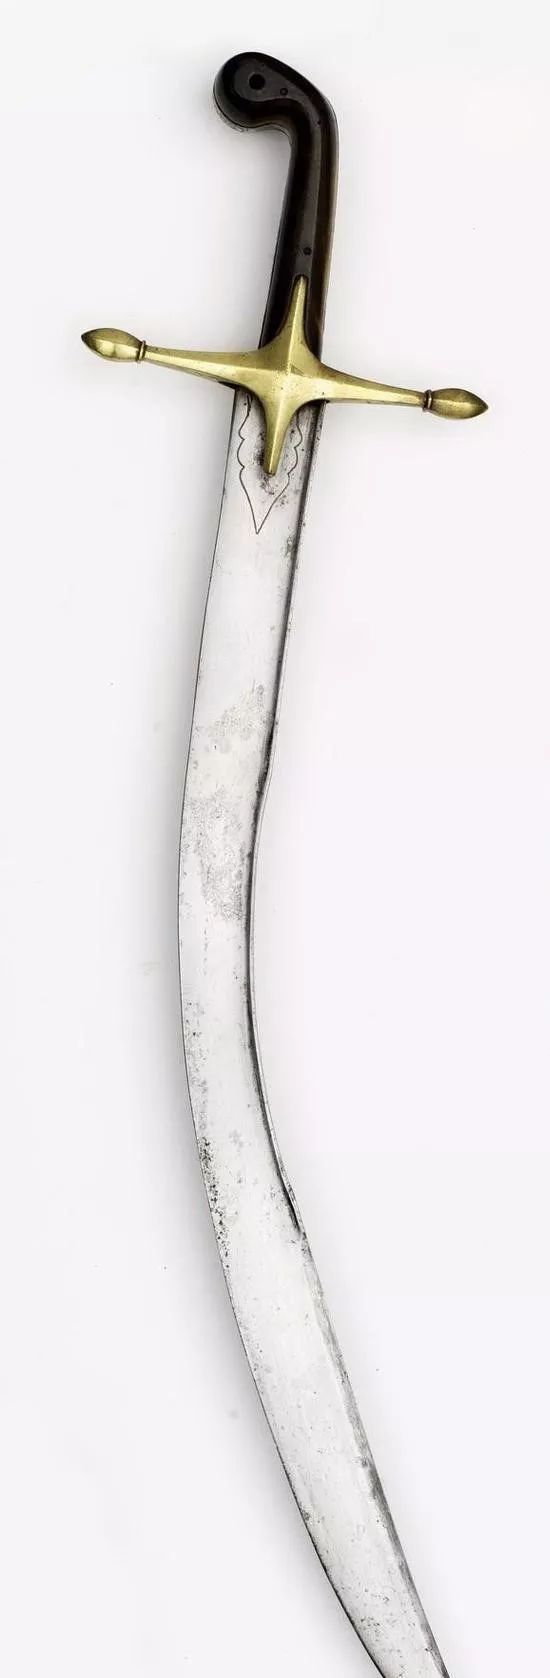 和其他土耳其弯刀相比,这柄弯刀在形制上依然属于基利或帕拉,并非是